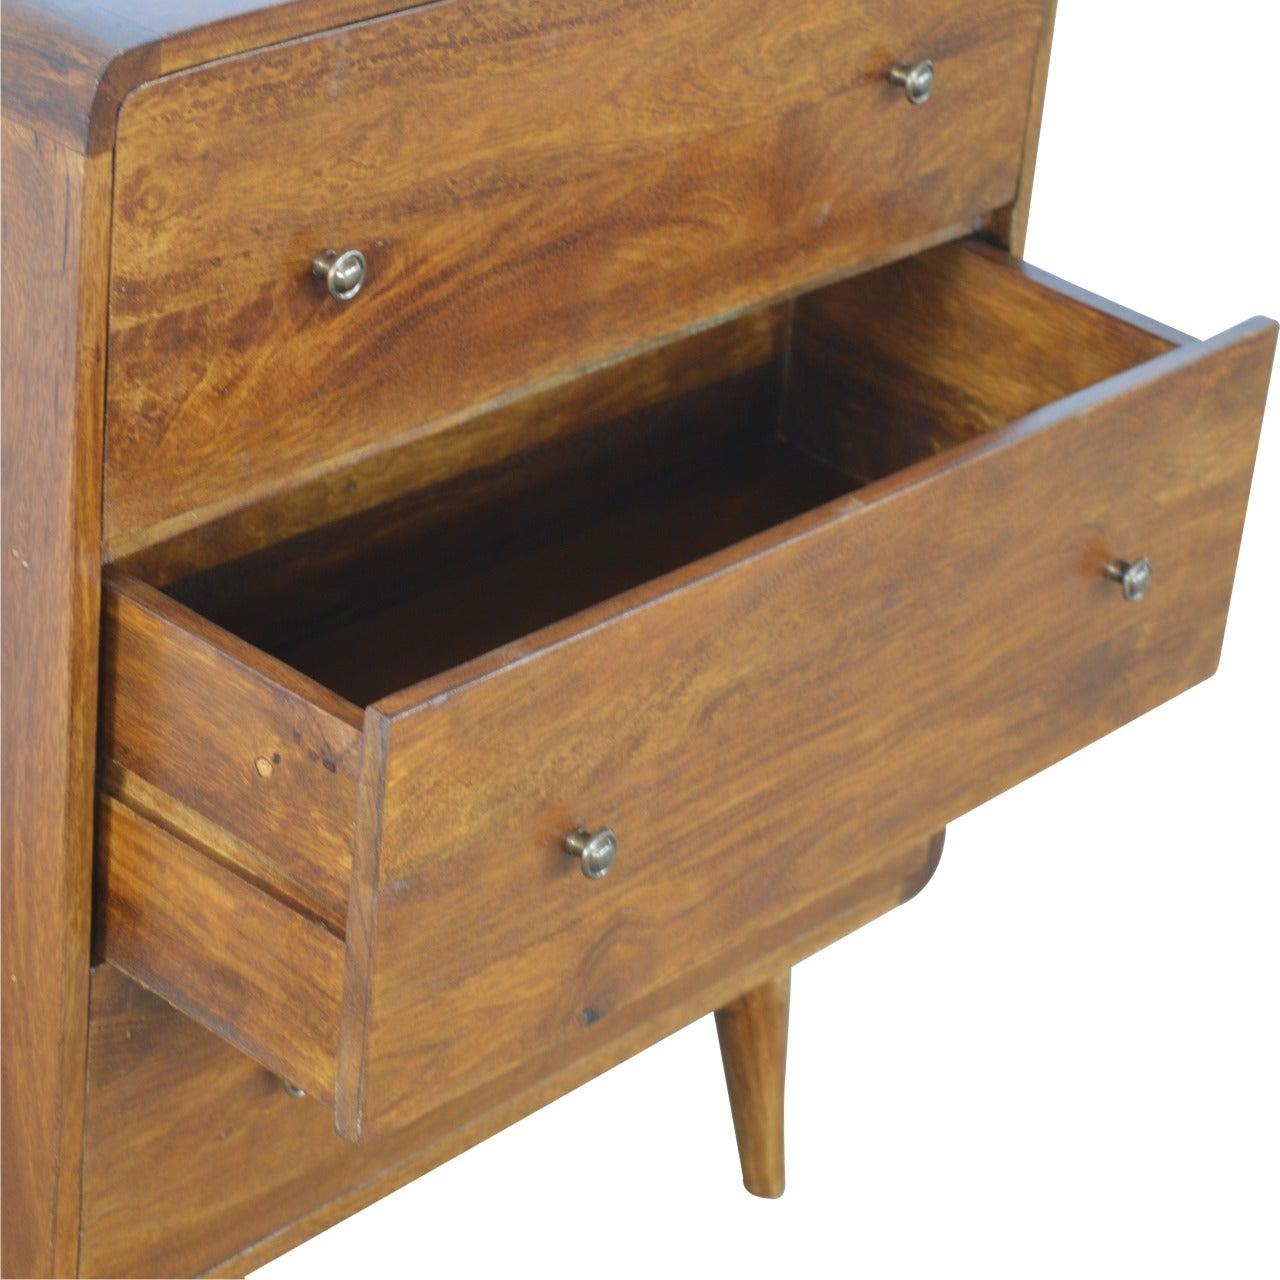 Curved chestnut chest - crimblefest furniture - image 6